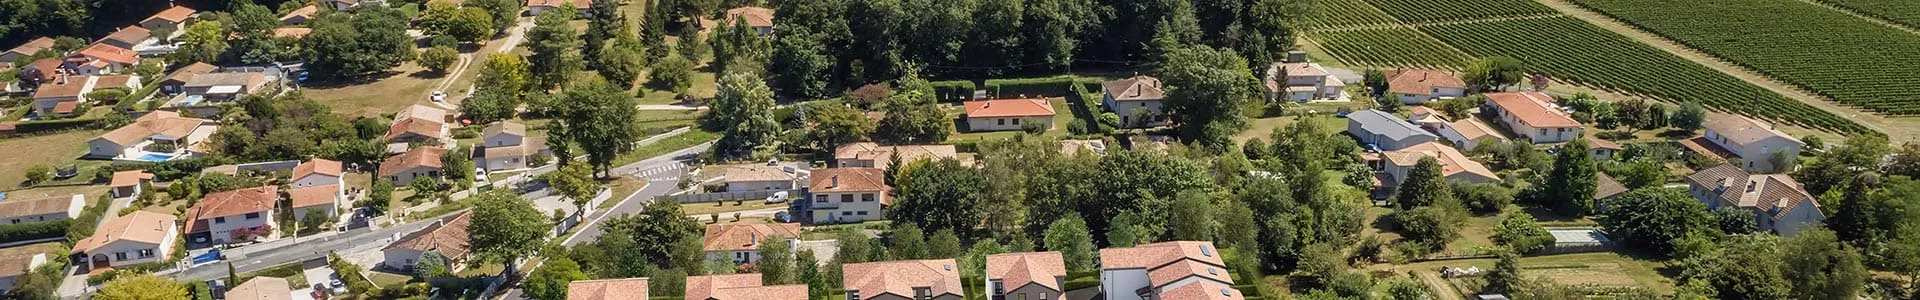 Vue aérienne du quartier autour de la résidence Les Vergers de la Courrège